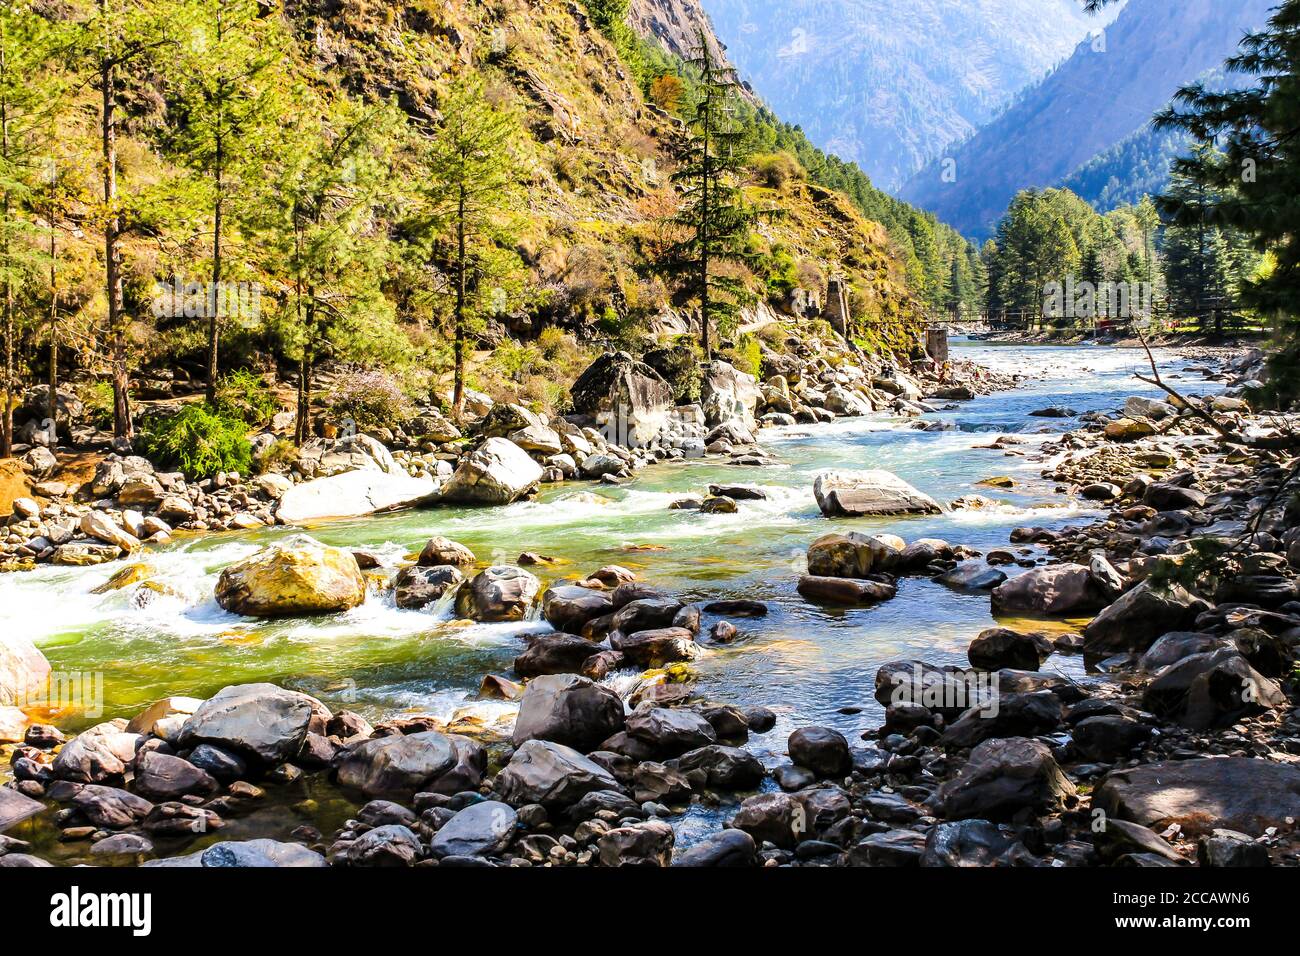 Kasol Manali - fiume Parvati che scorre sulle montagne innevate di Himachal Pradesh, India. Fiume acqua che scorre nella valle degli dei. Himachal Pradesh. Foto Stock